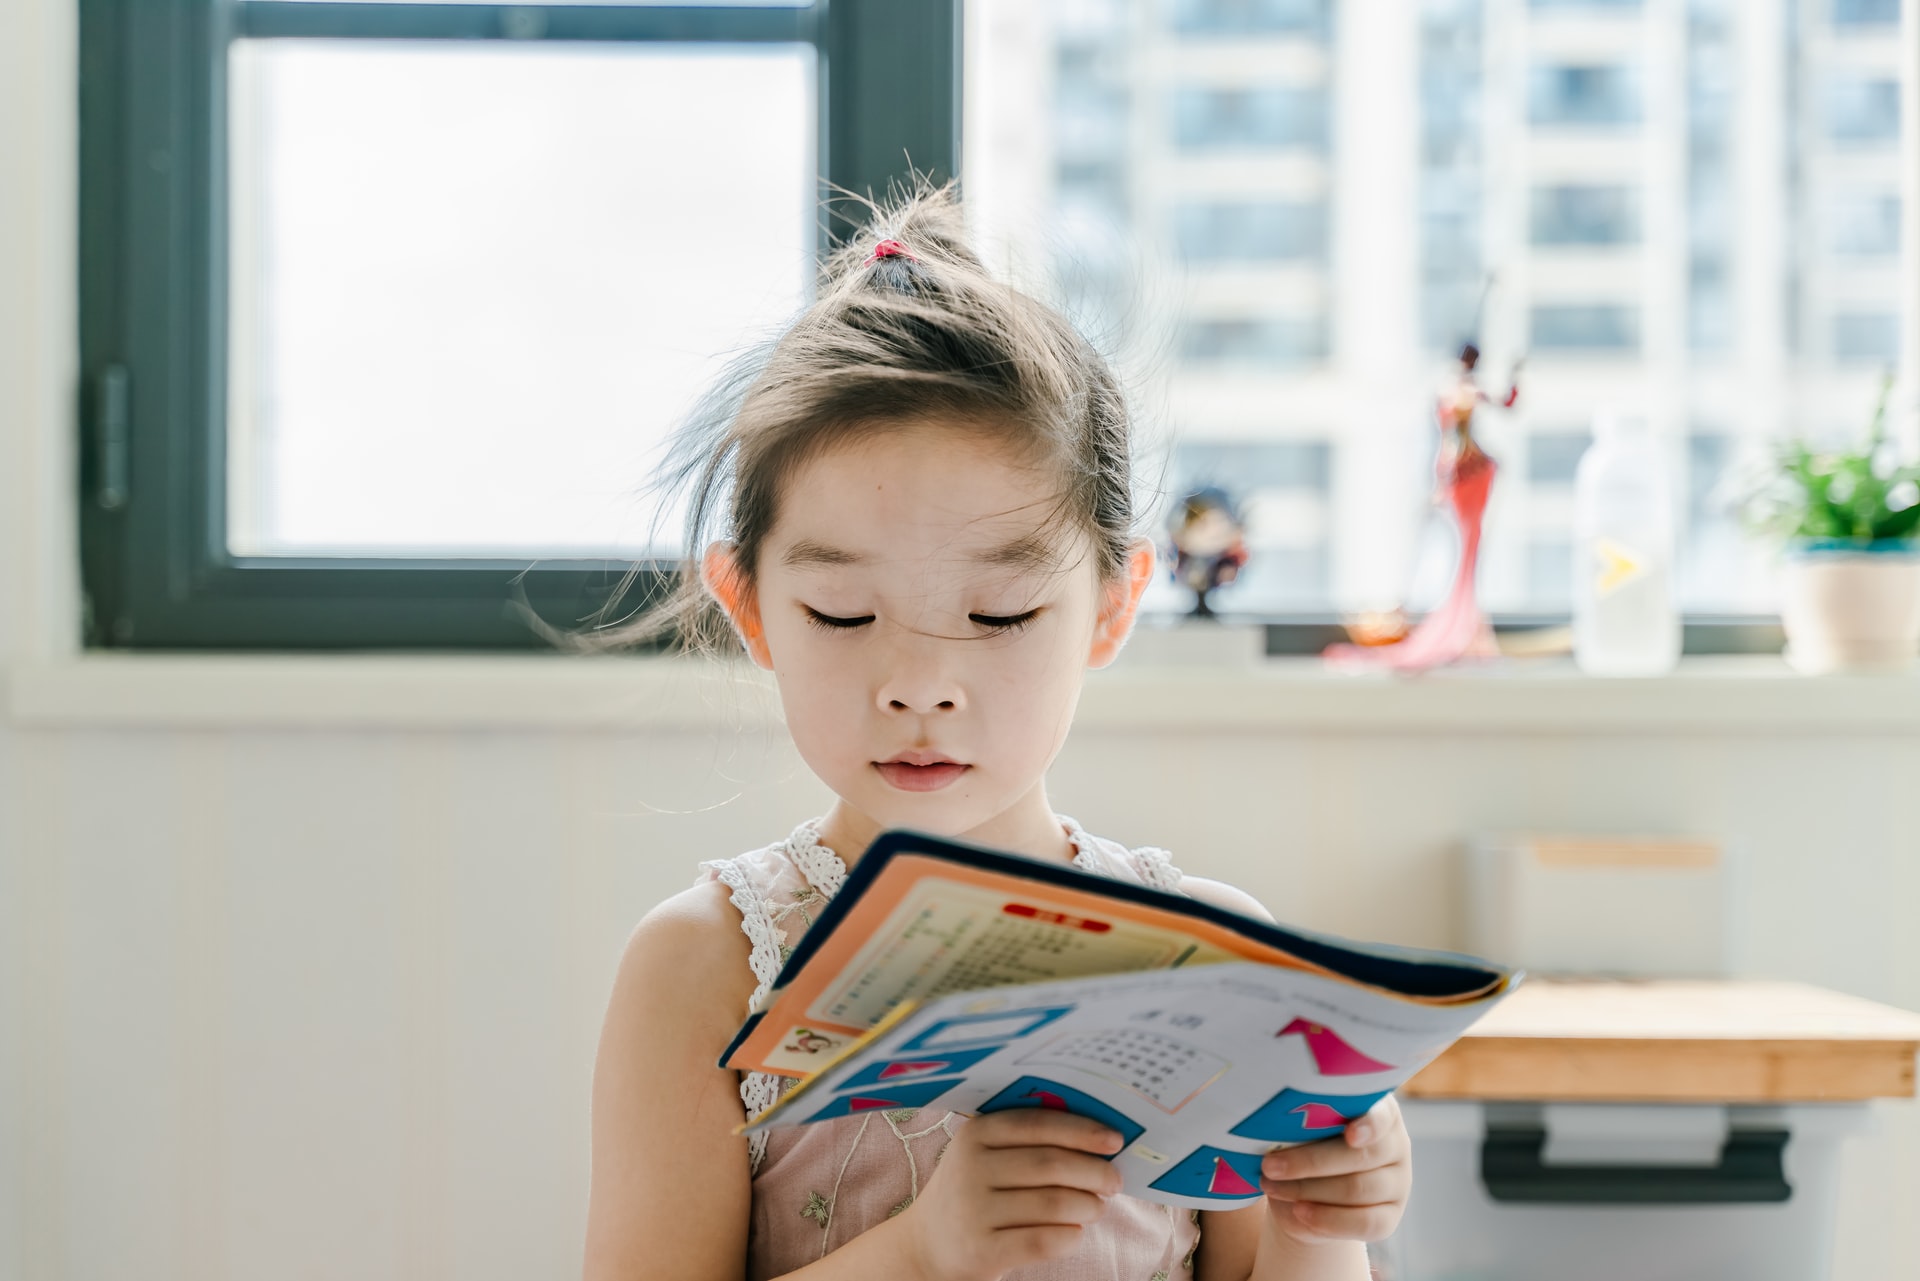 Children Learning Reading Program Review – an amazing reading program for kids!